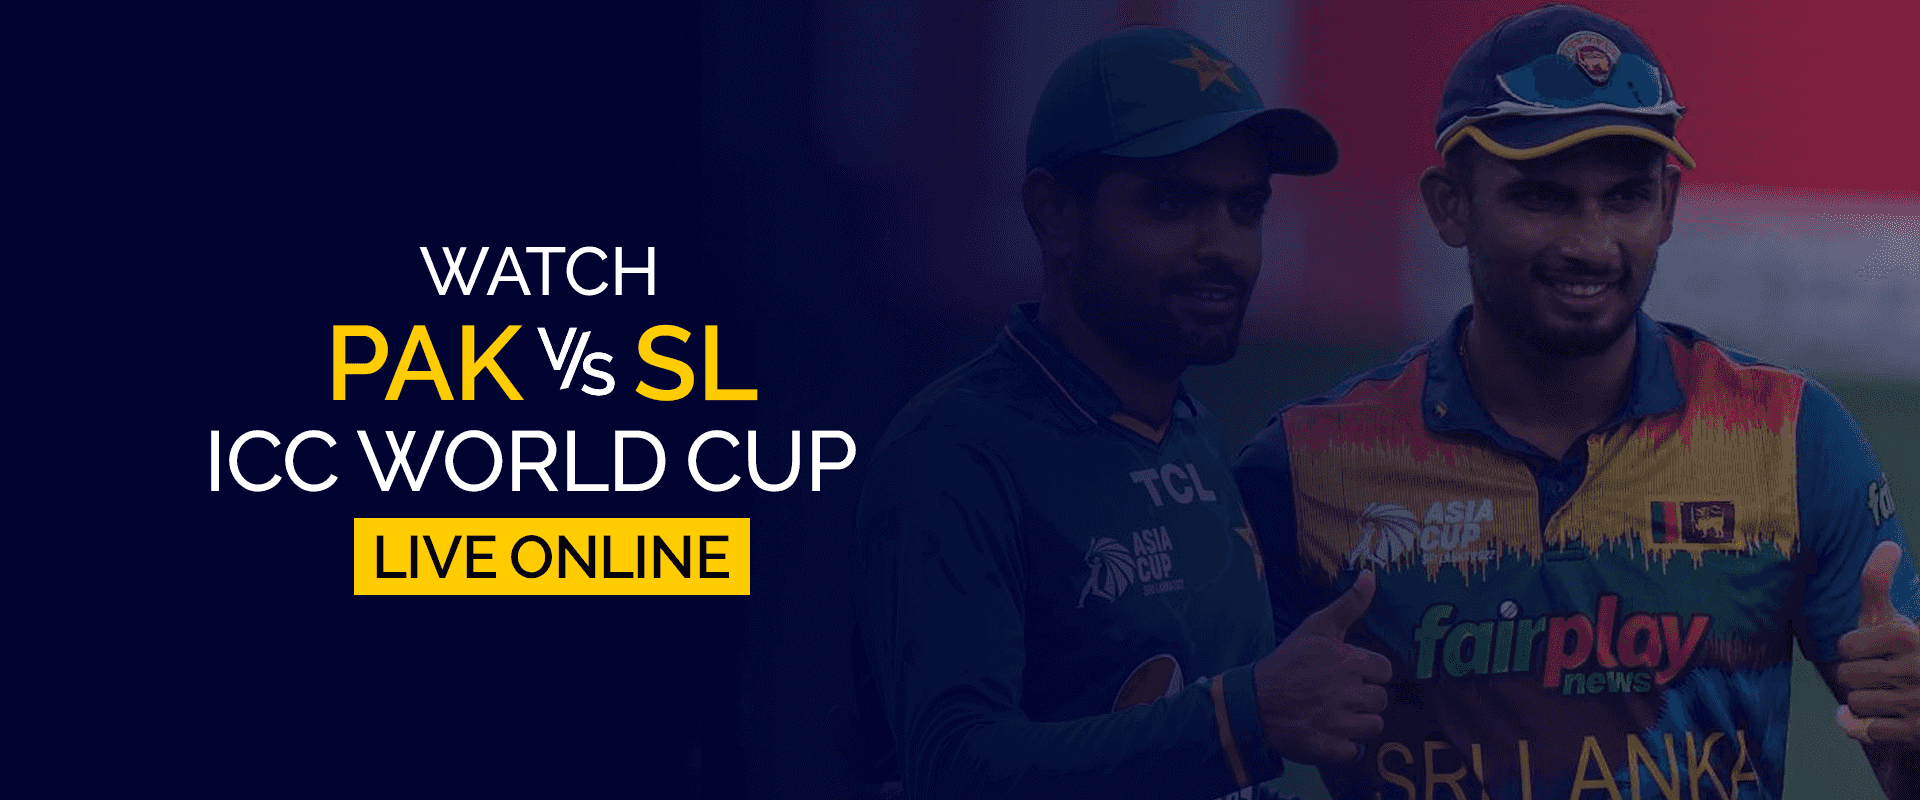 Смотрите матч PAK vs SL ICC World Cup в прямом эфире онлайн